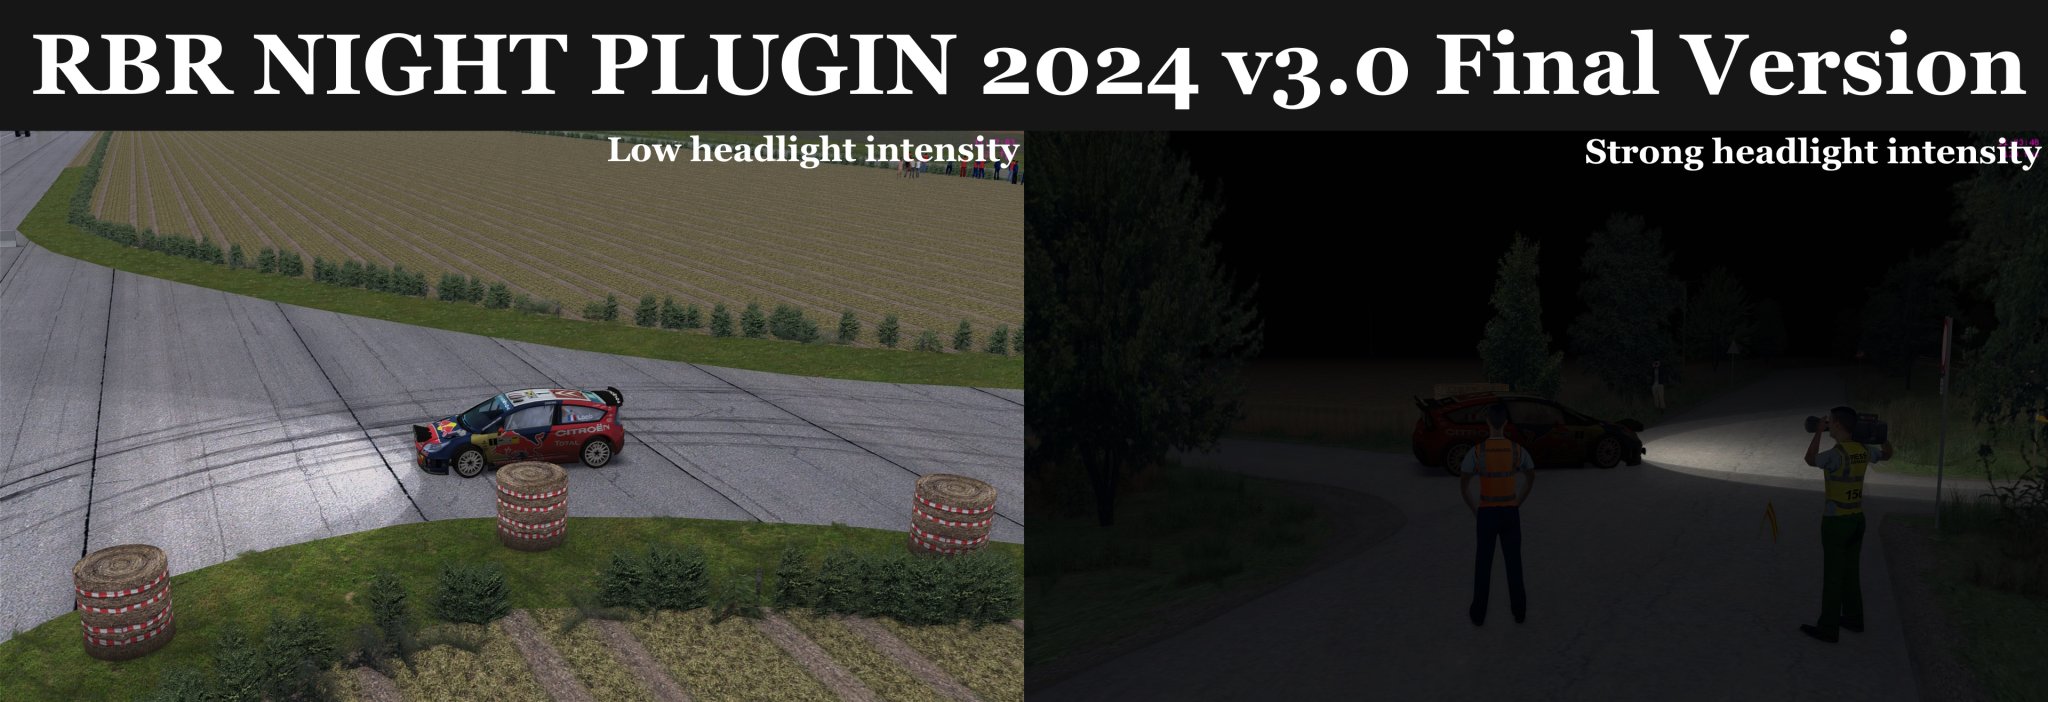 RBR NIGHT PLUGIN 2024 v3.0 Final Version.jpg